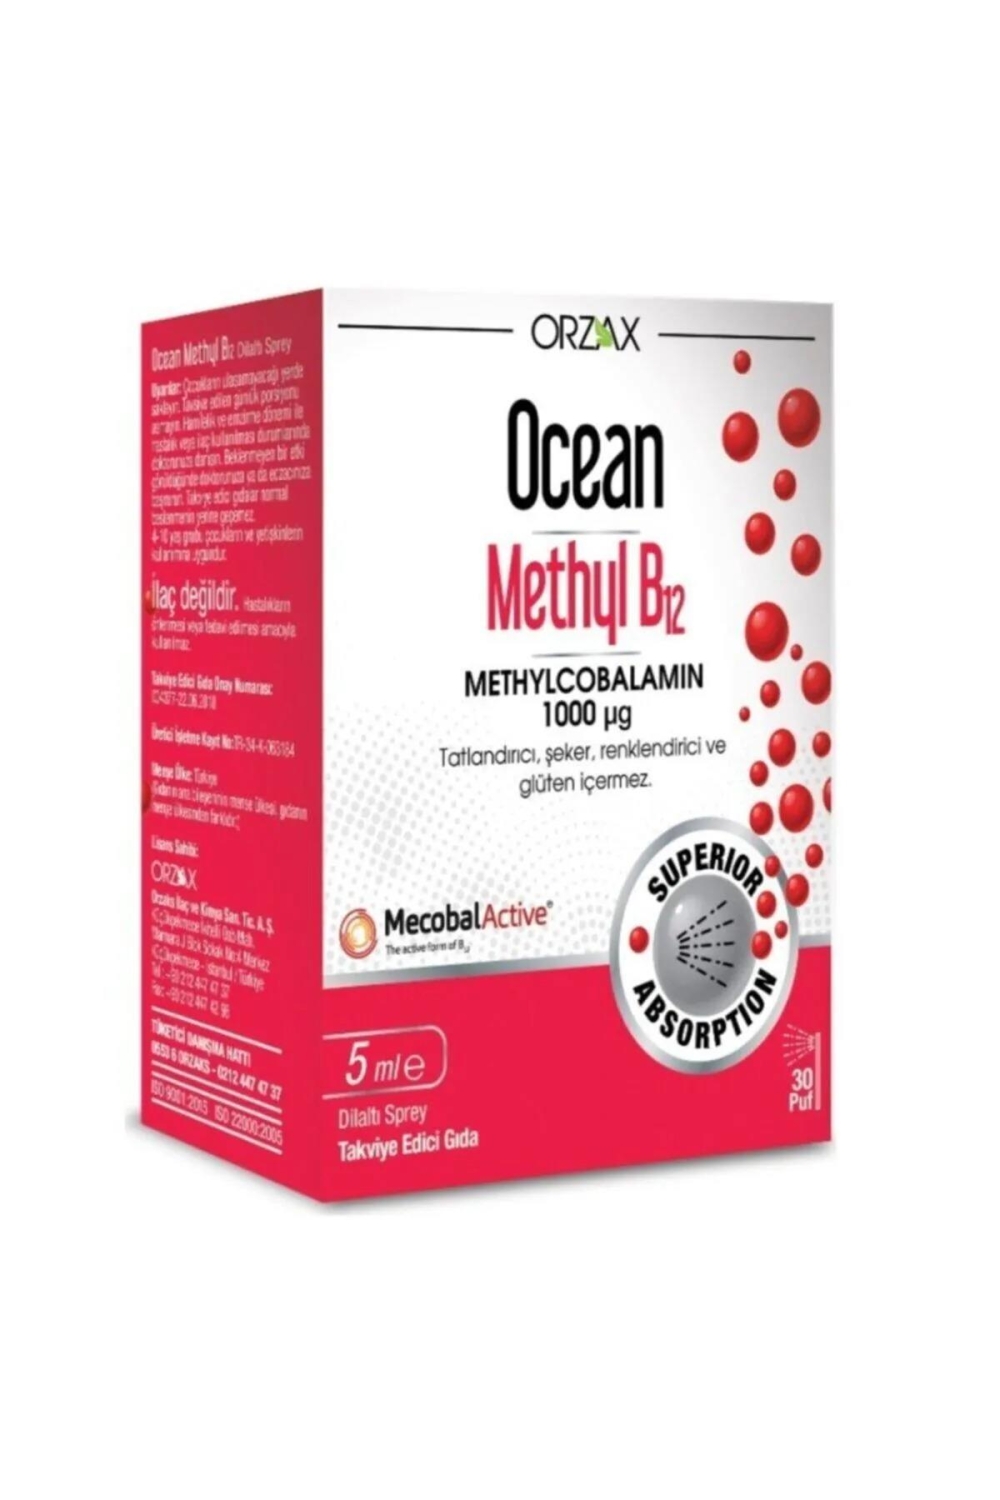 Ocean Methyl B12 1000 mg 5 ml sprey - 1